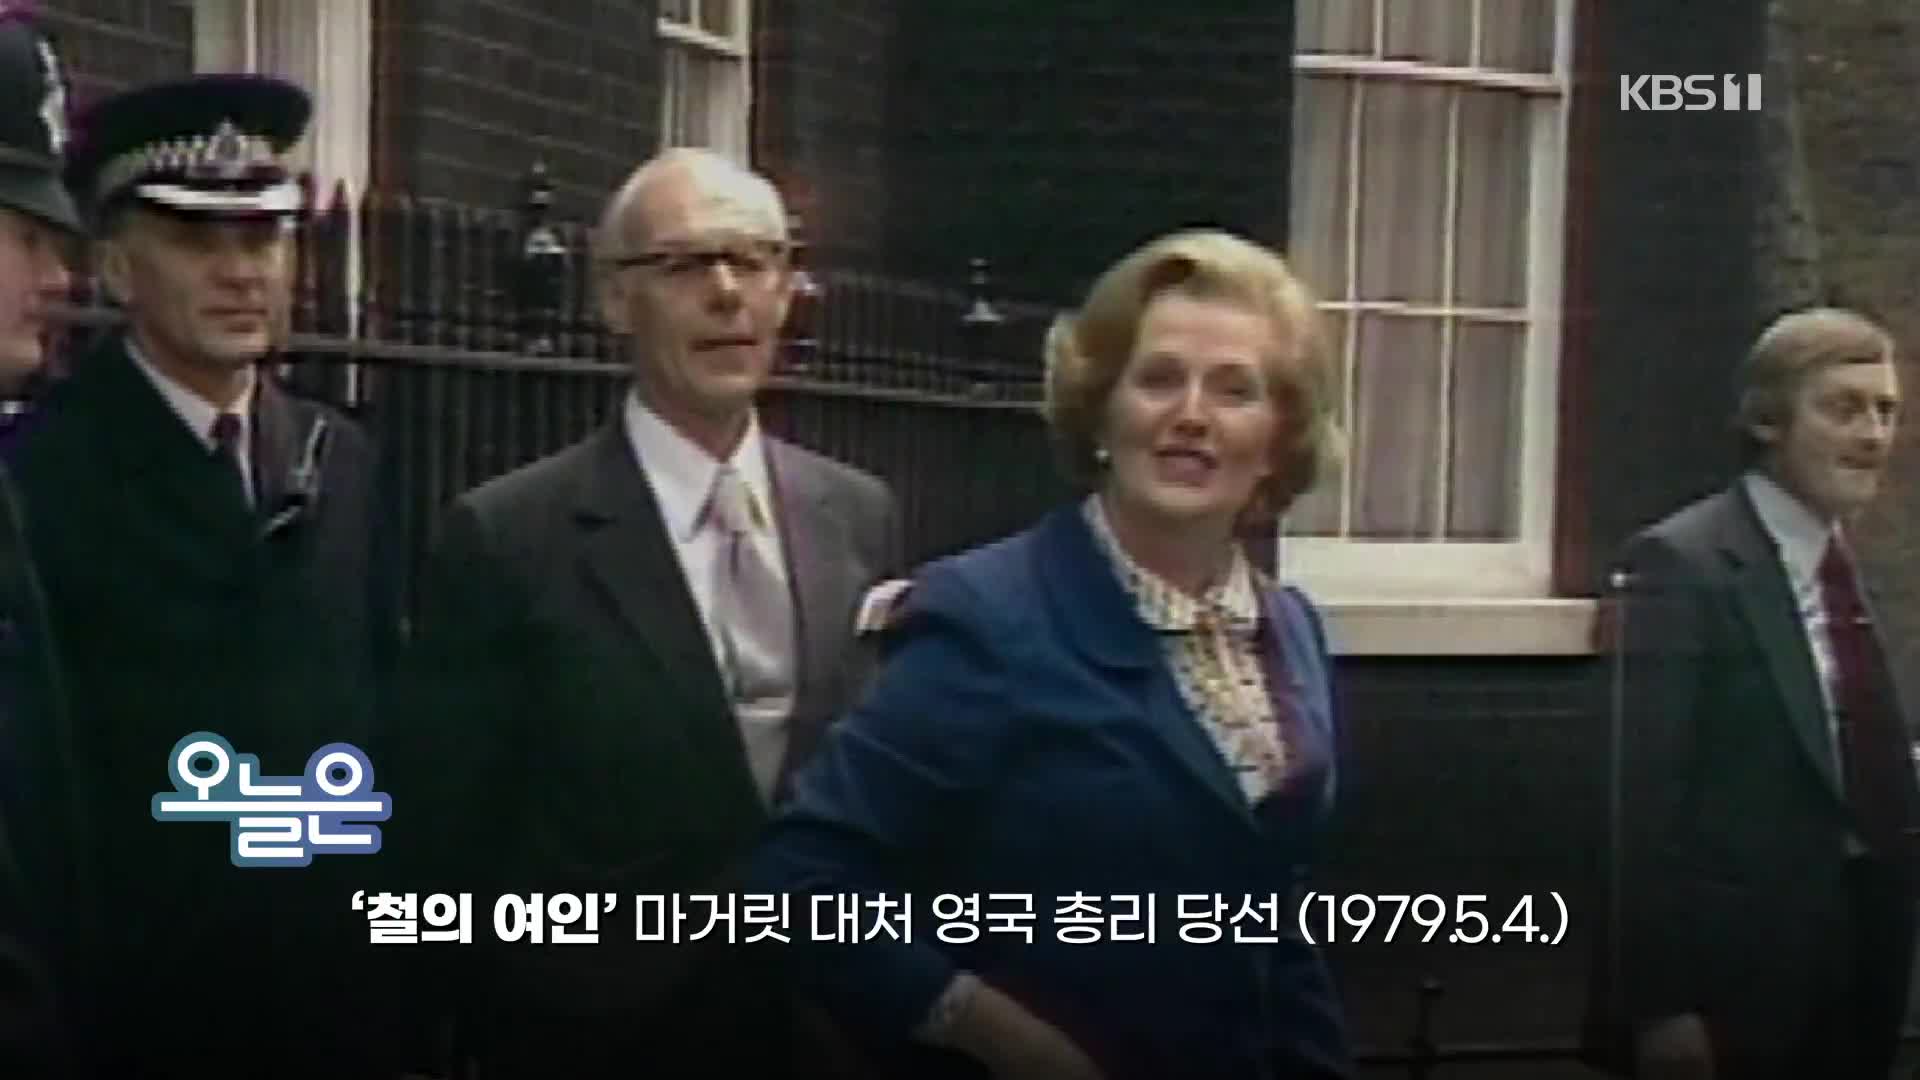 [오늘은] ‘철의 여인’ 마거릿 대처 영국 총리 당선(1979.5.4.)